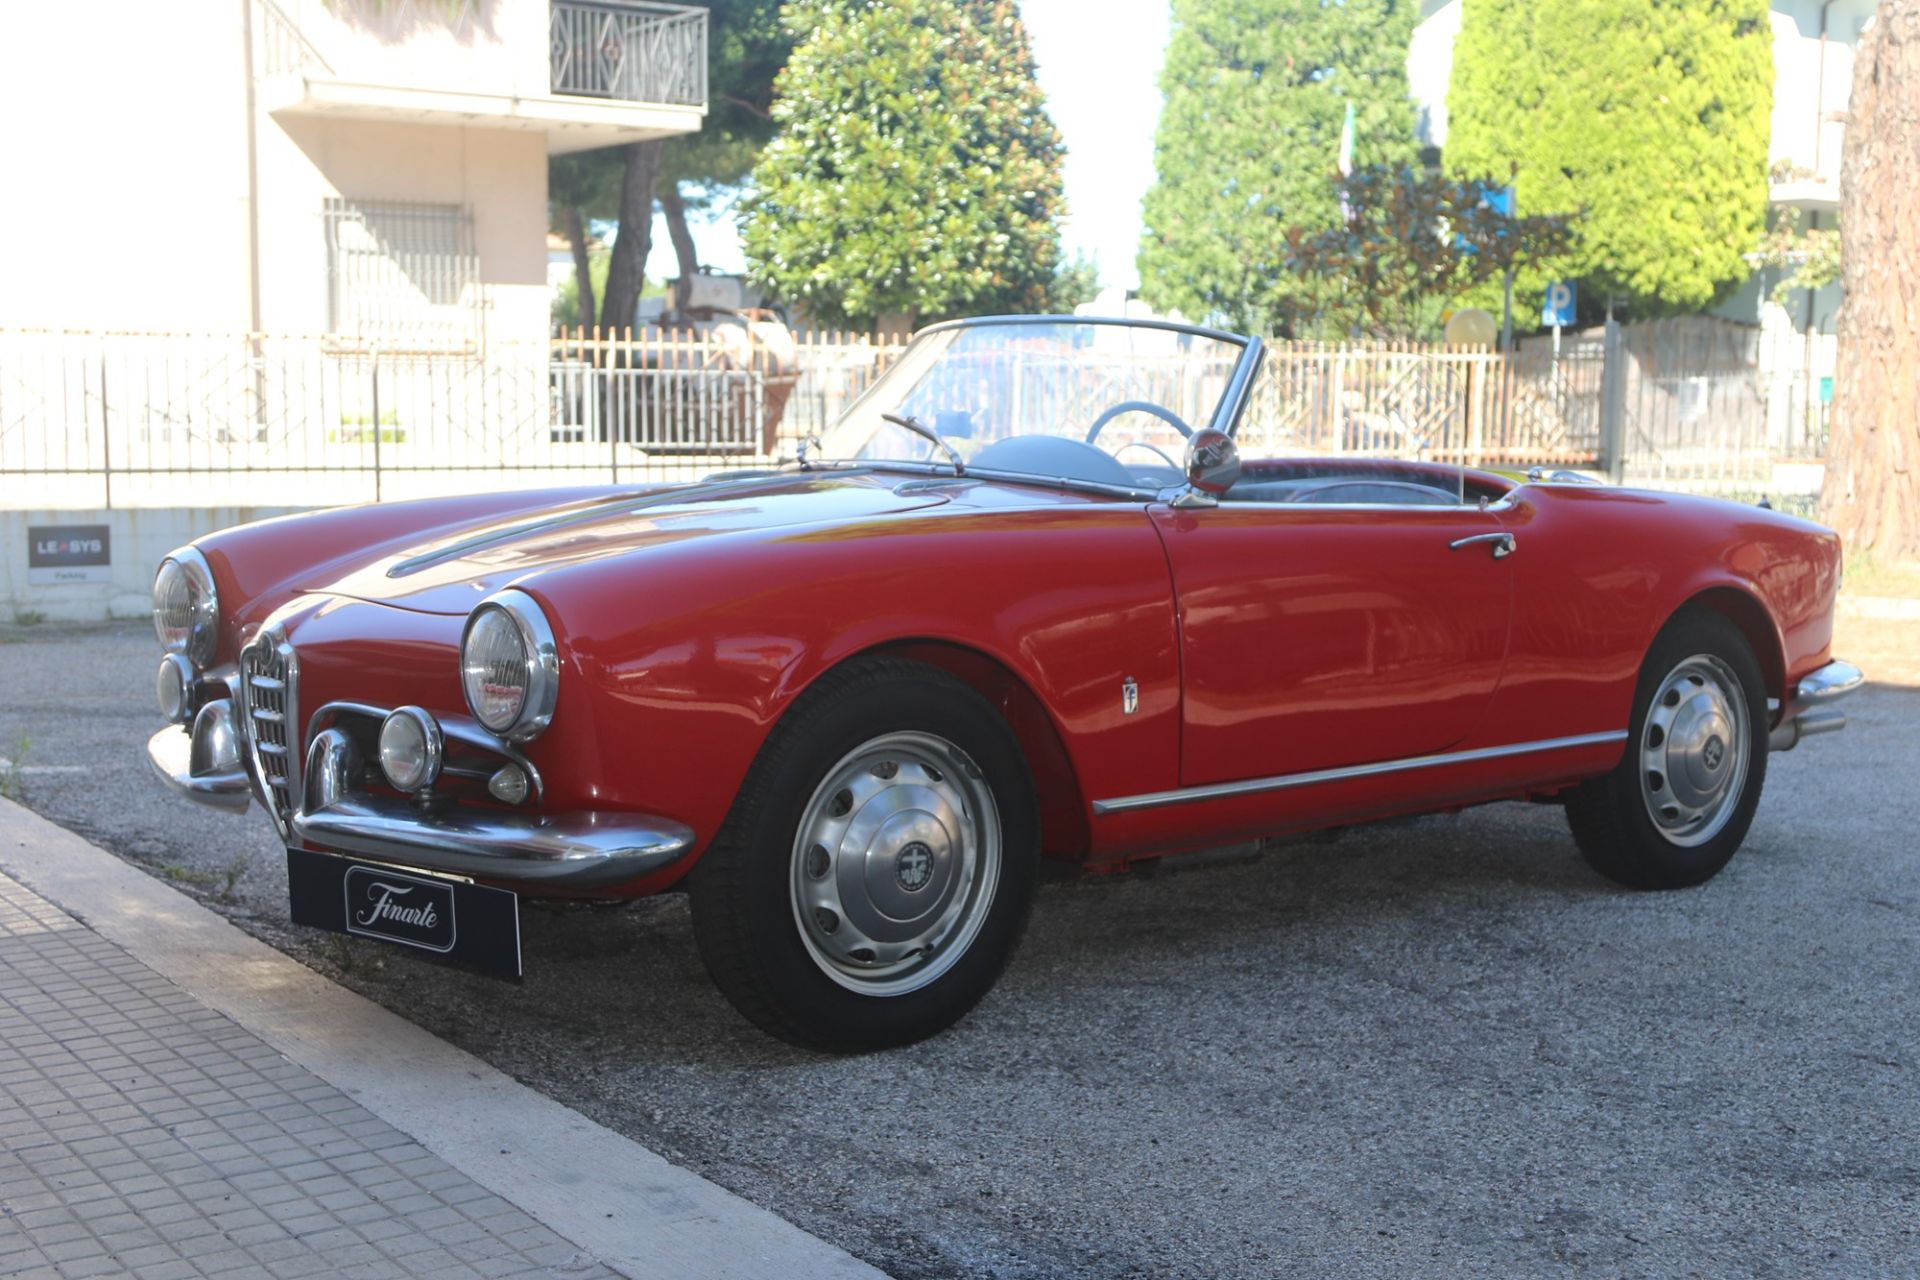 1957 Alfa Romeo Giulietta spider veloce (Pinin Farina) - Image 10 of 15